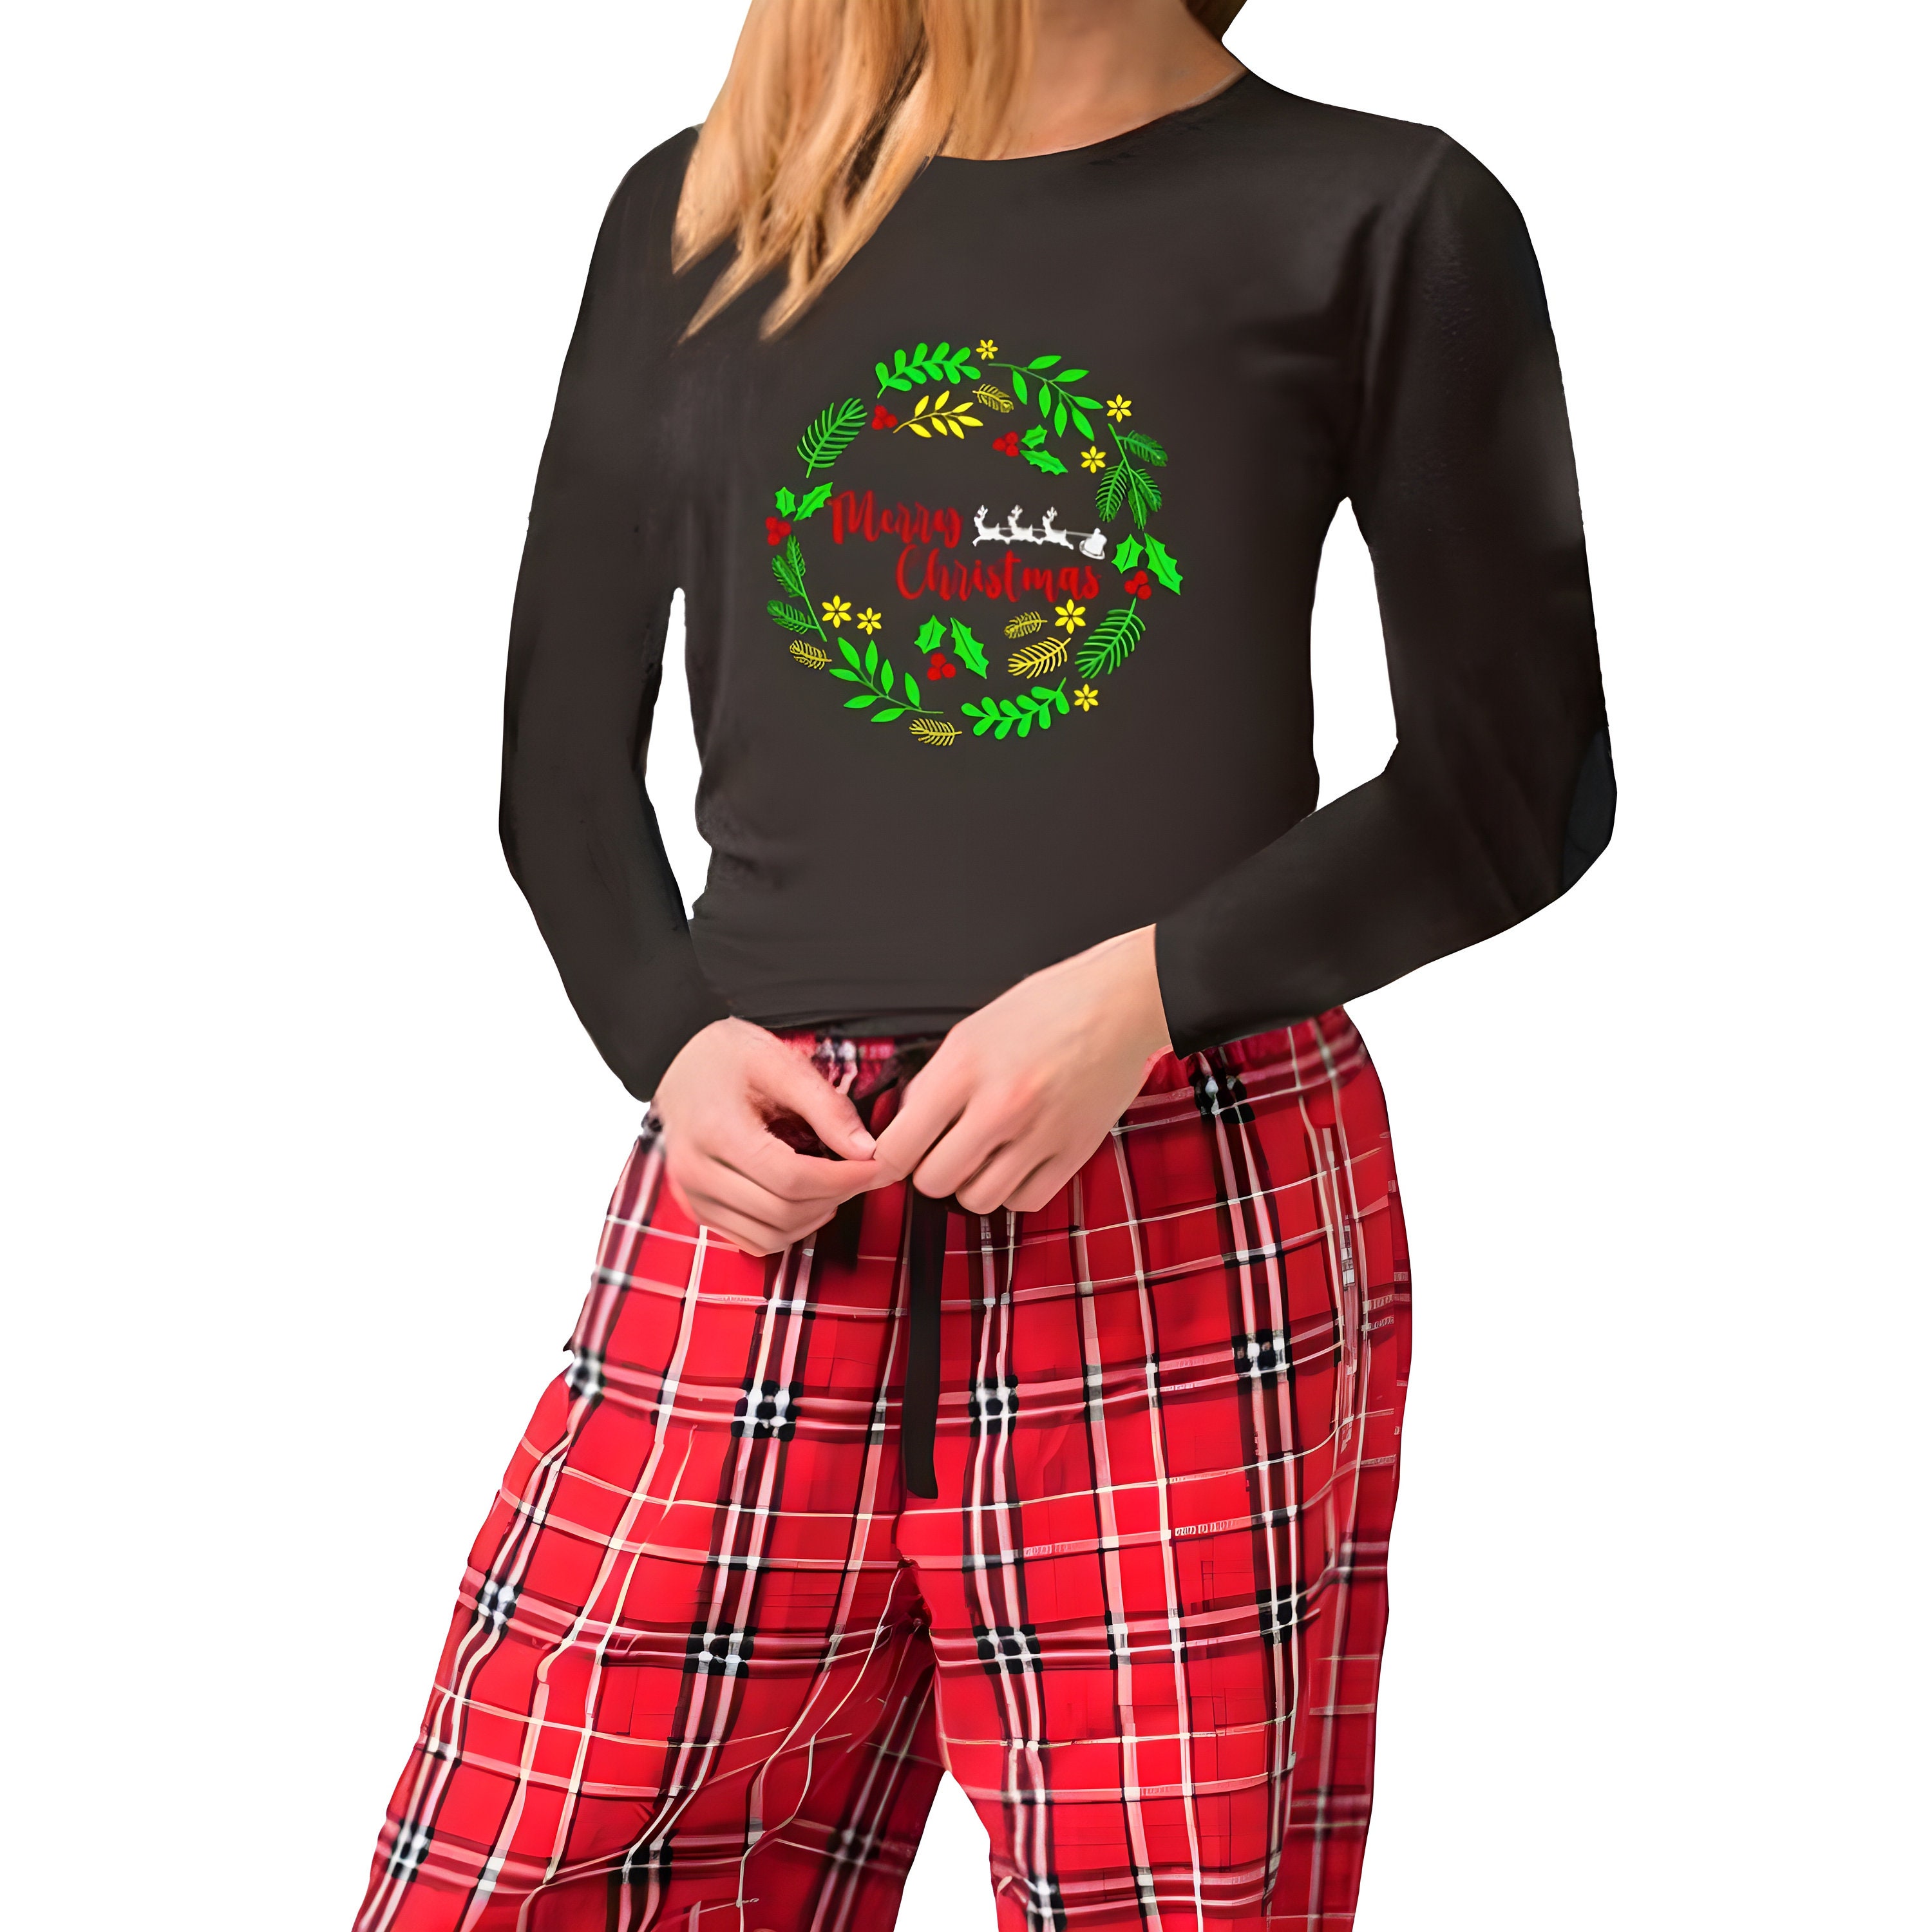 Women's Christmas Pjs, Christmas Pajamas, Cute Christmas Sleepwear